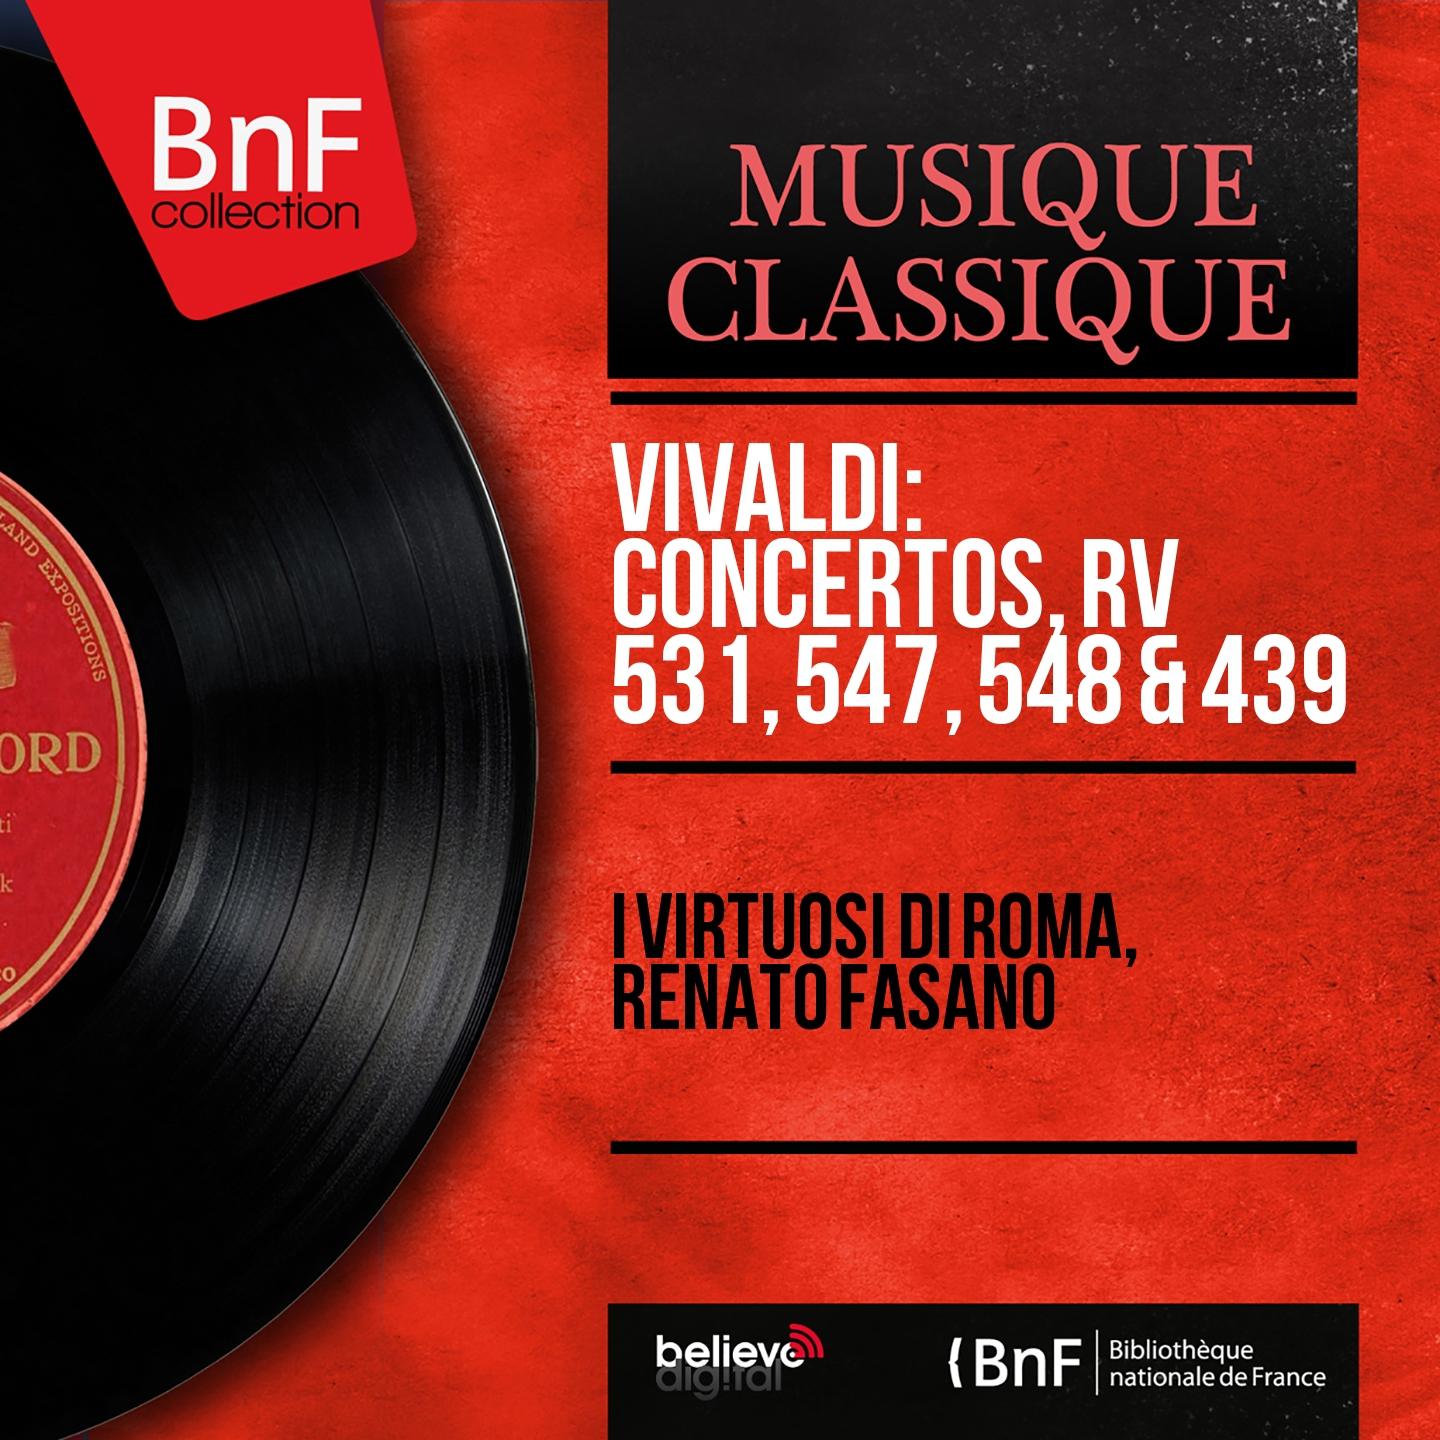 Vivaldi: Concertos, RV 531, 547, 548 & 439 (Mono Version)